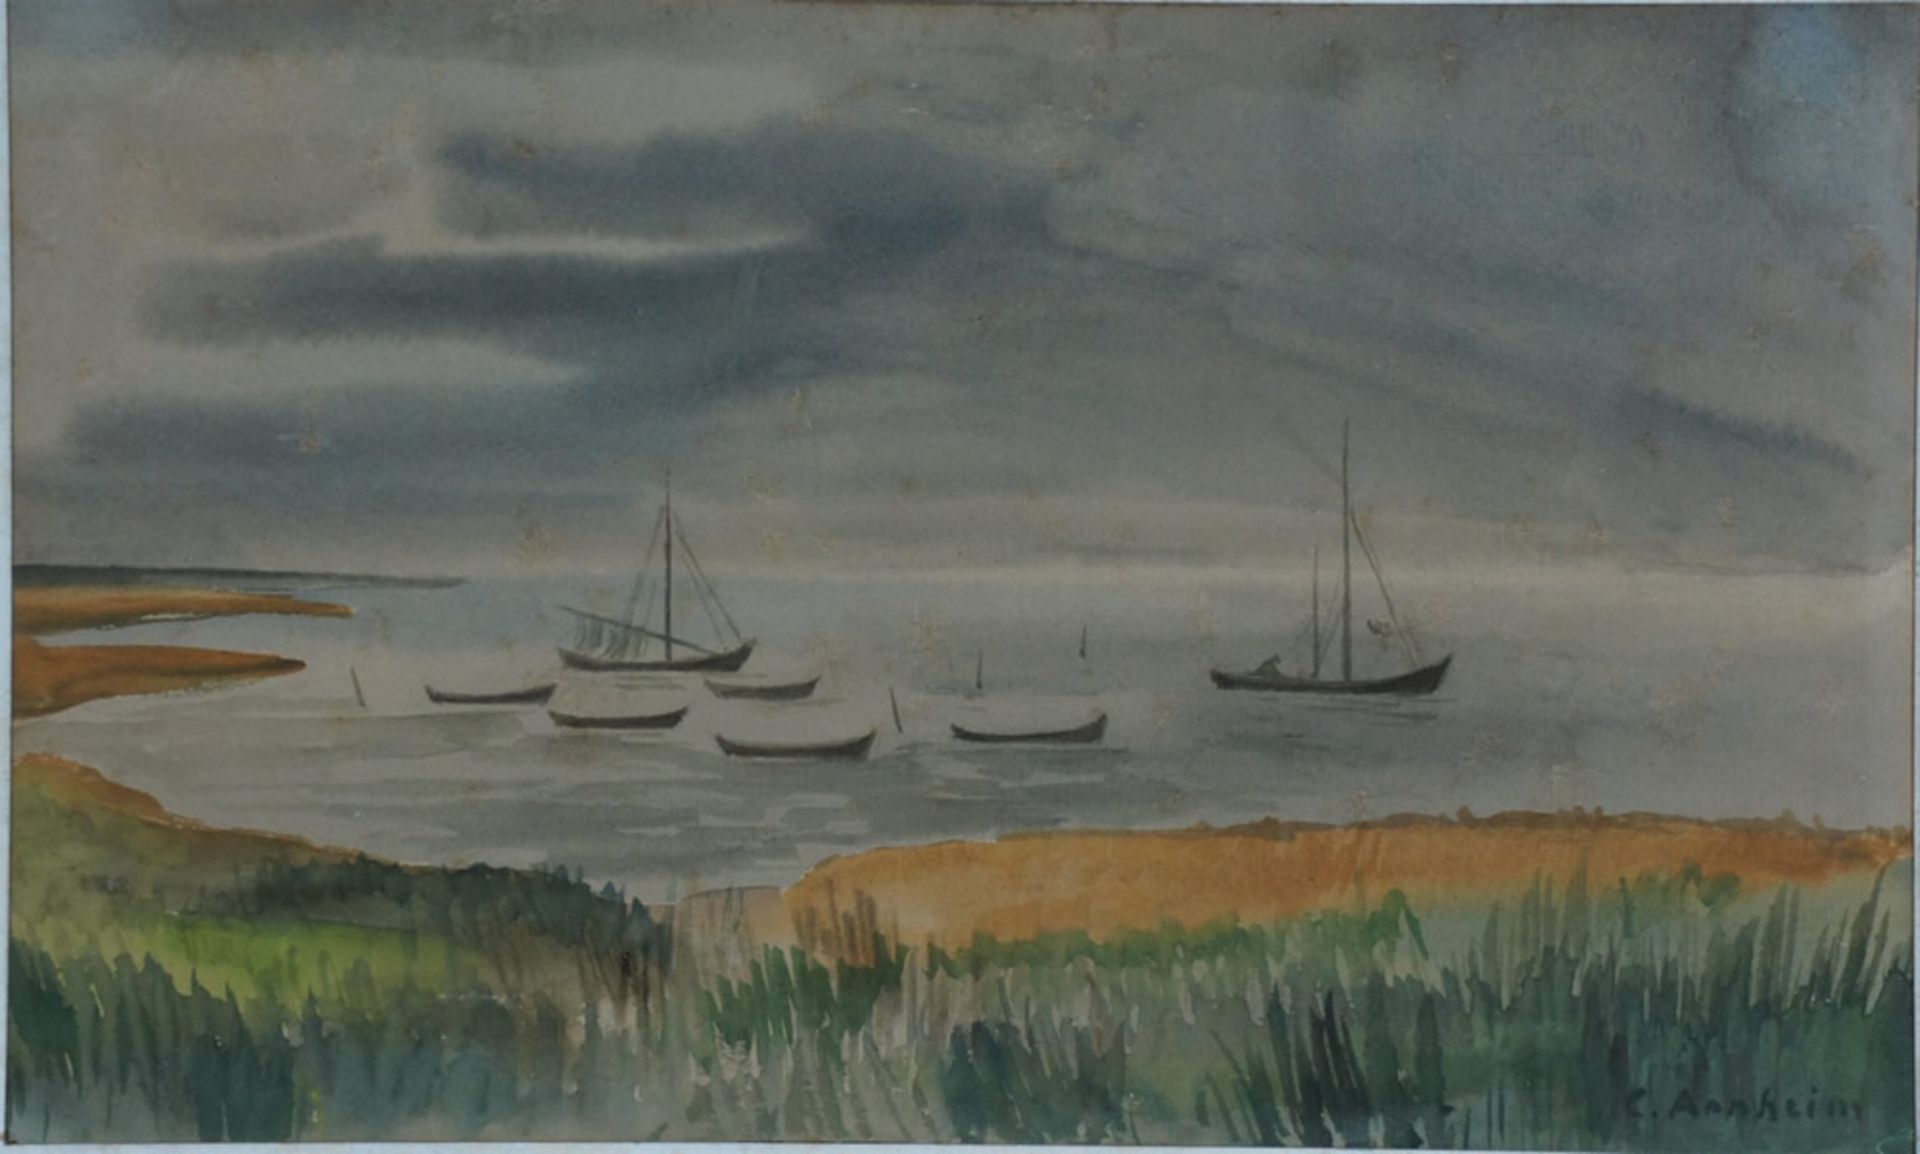 Arnheim, Clara, Boote vor der Küste, Mischt., 22 x 35, sign.Arnheim, Clara, Boote vor der